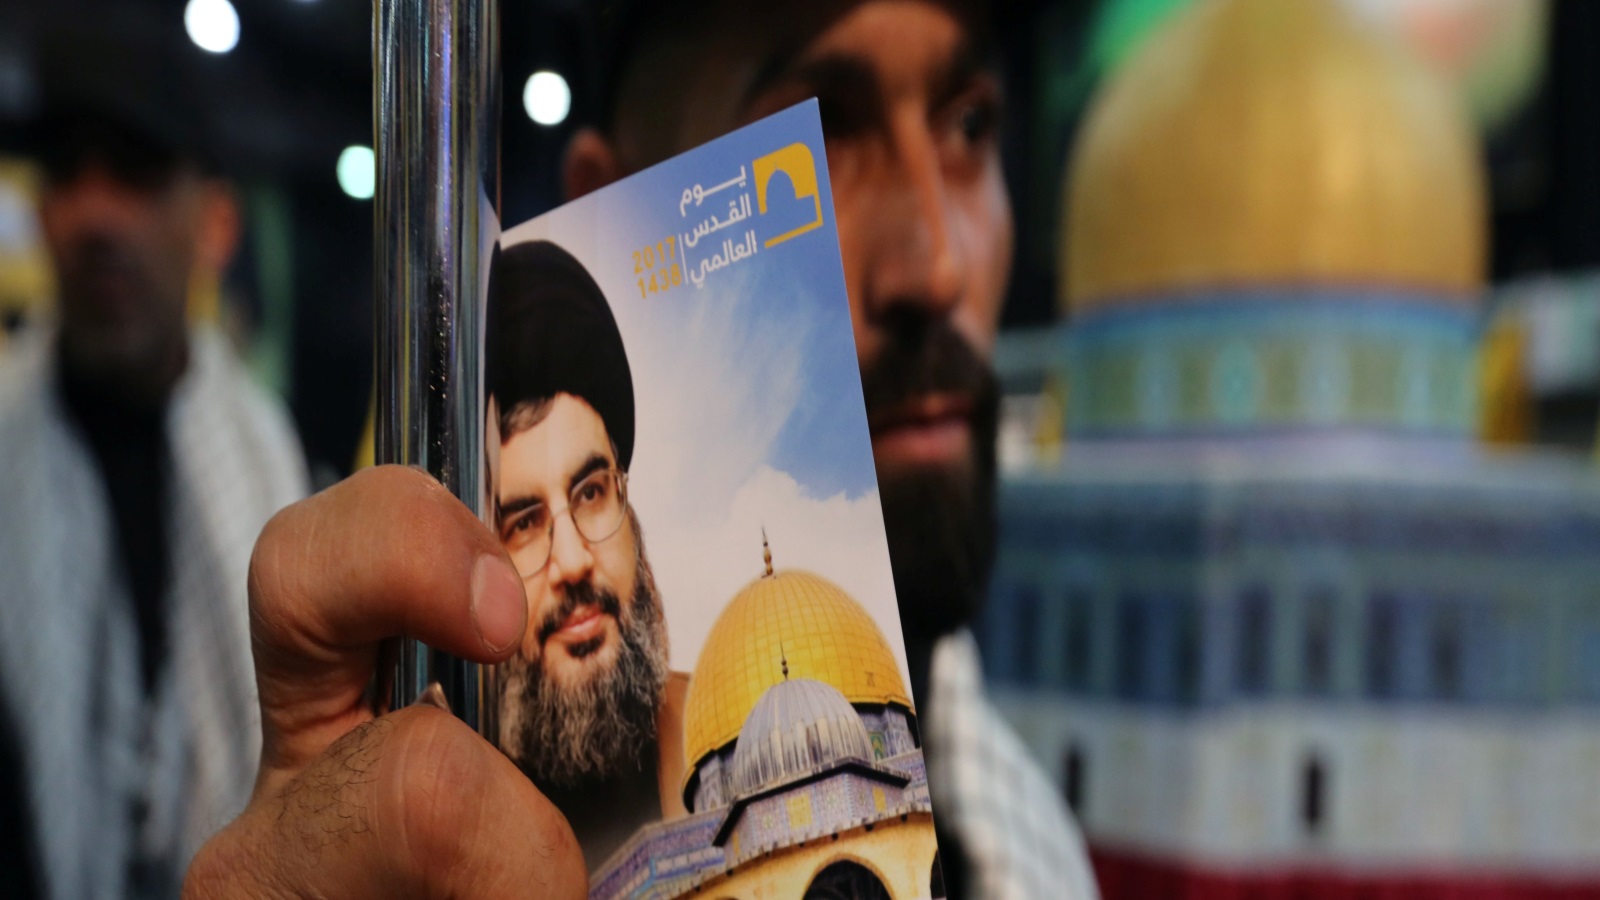 حزب الله يكره إسرائيل حقاً، وإيران تكرهها. الكراهية شيء وتحرير فلسطين شيء آخر. لكن، لا بأس من رفع الشعار، ومن تبني القضية الفلسطينية